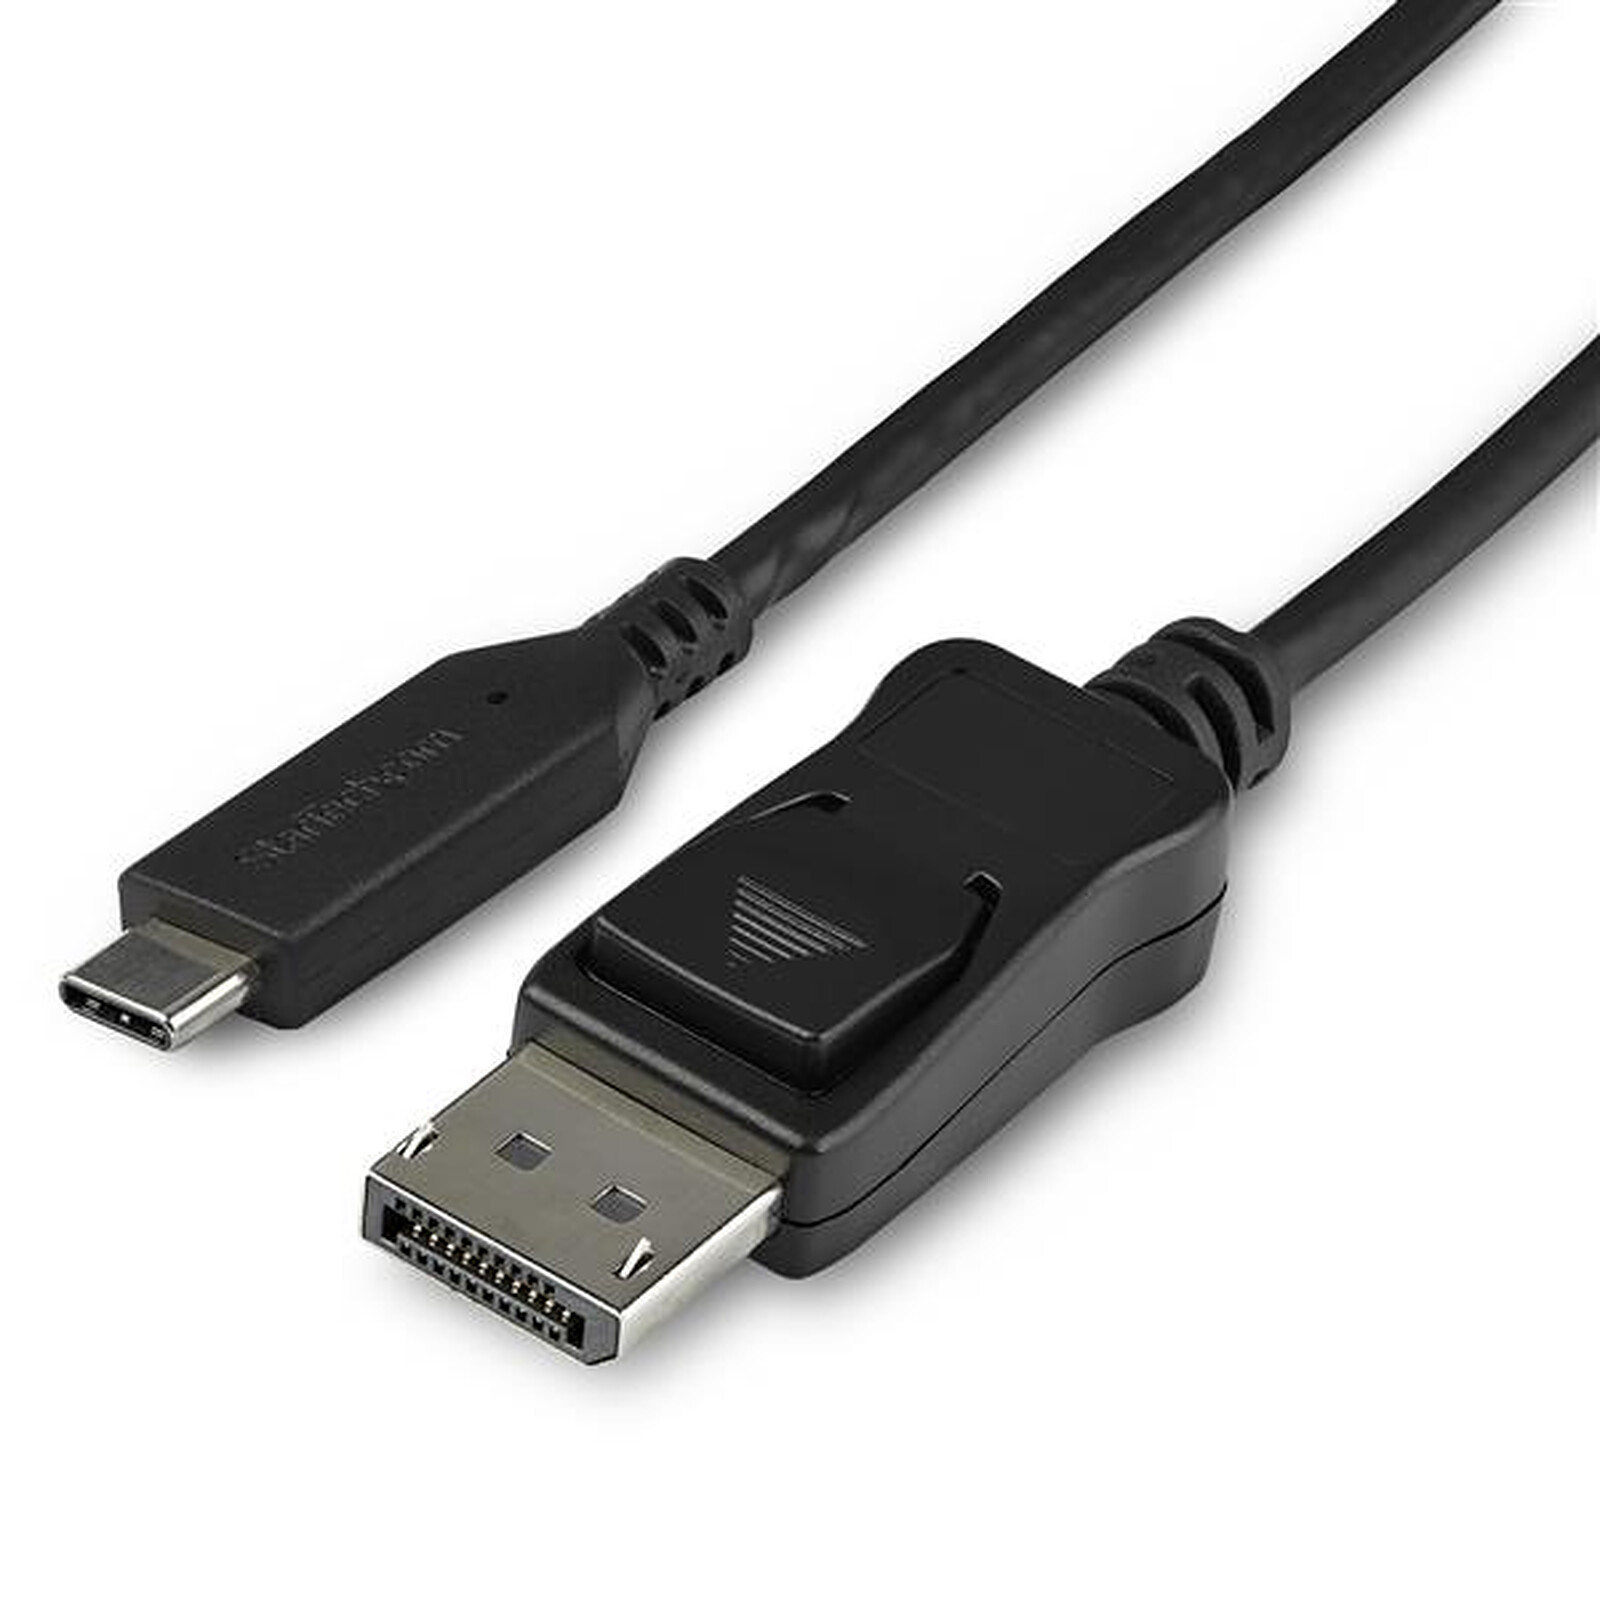 Cable adaptador de DisplayPort a HDMI de StarTech.com - DisplayPort - LDLC